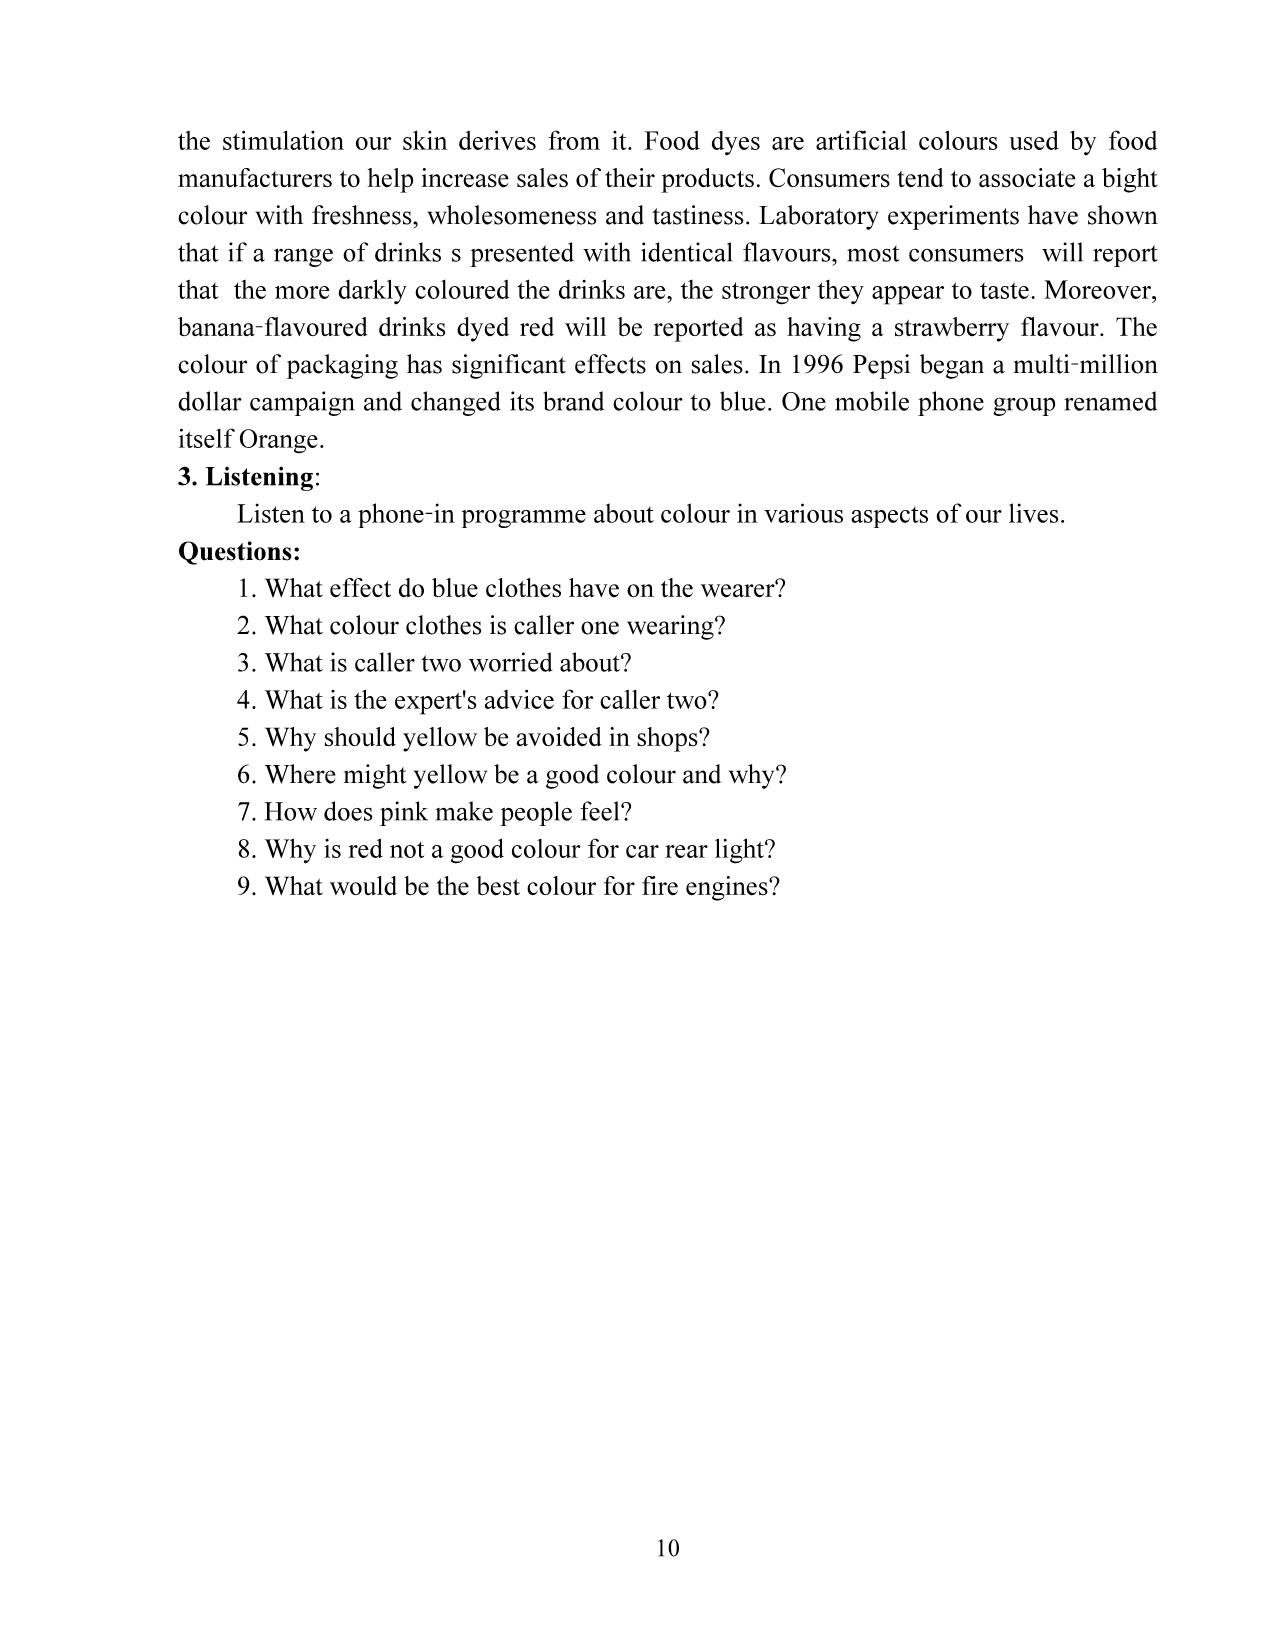 Giáo trình Speaking 3 (Phần 1) trang 10